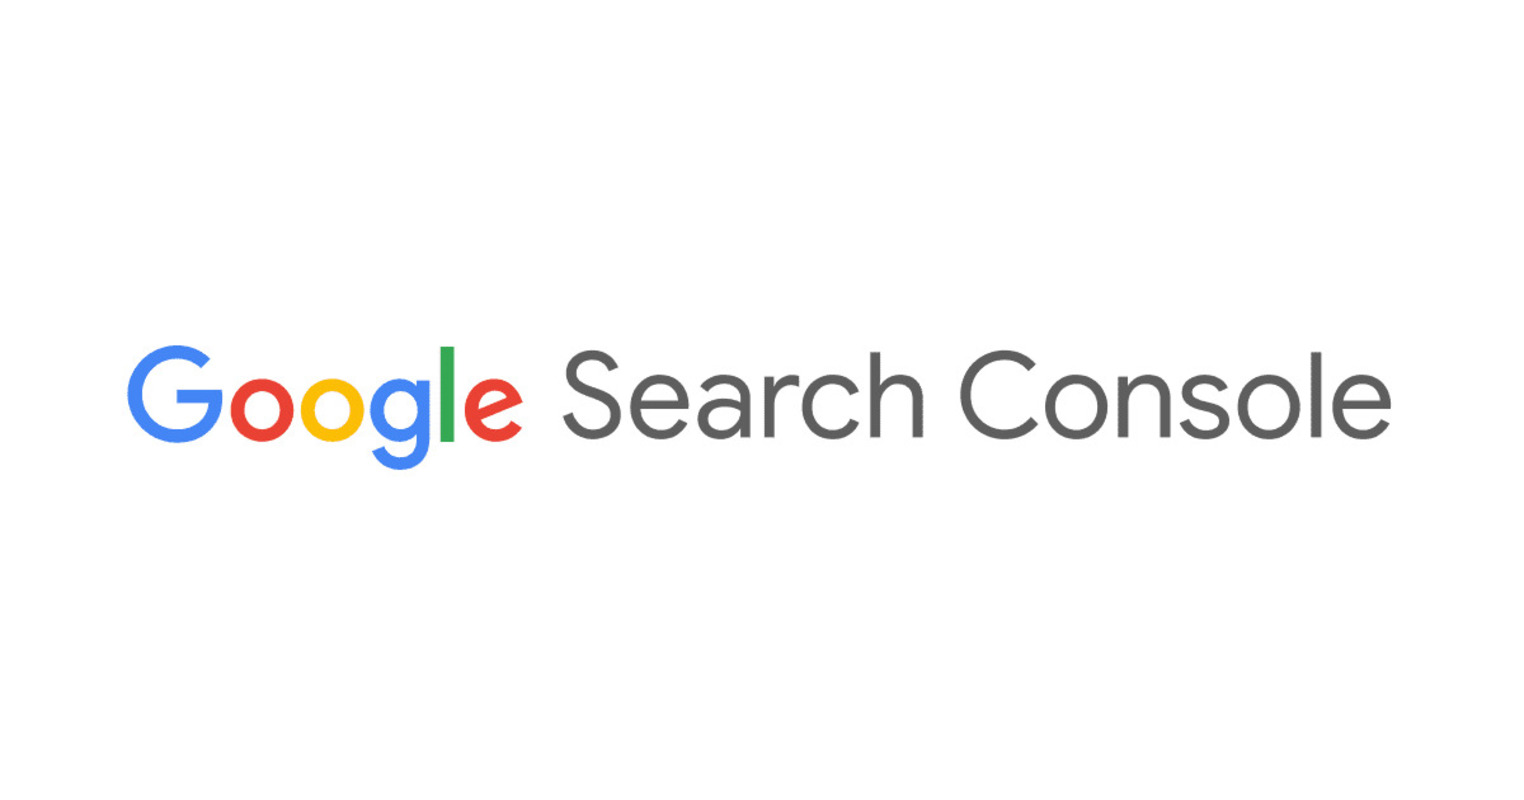 Hiểu rõ Google Search Console là gì sẽ giúp bạn quản lý và vận hành website của mình tốt hơn